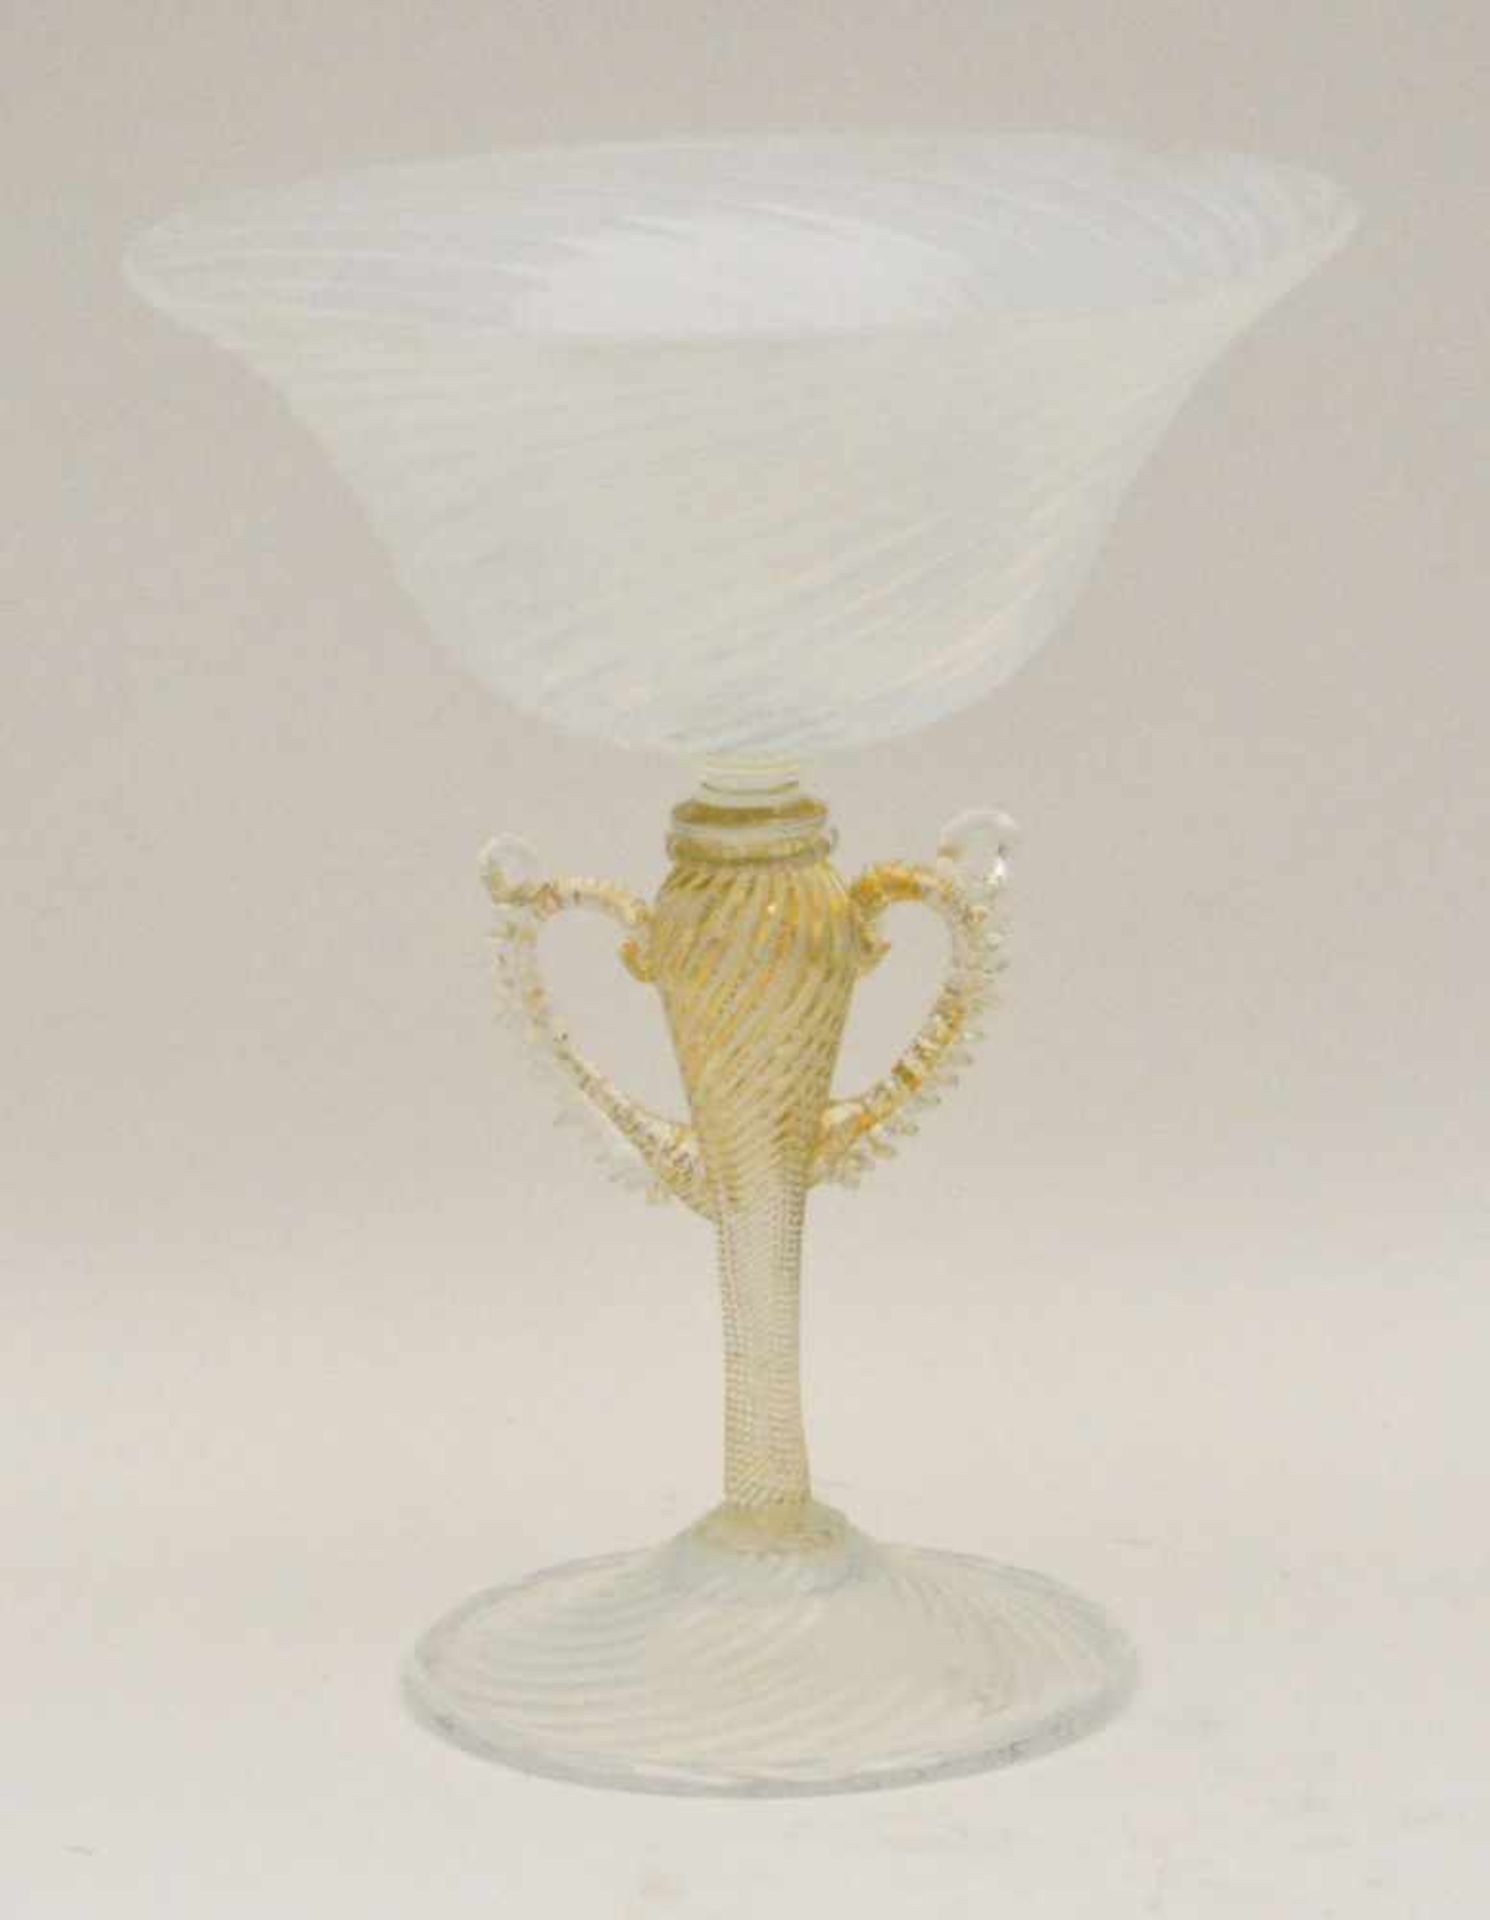 Obstschale, Murano um 1900,Milchglas, Goldfäden im Glas, Höhe 23 x 18,5 cm